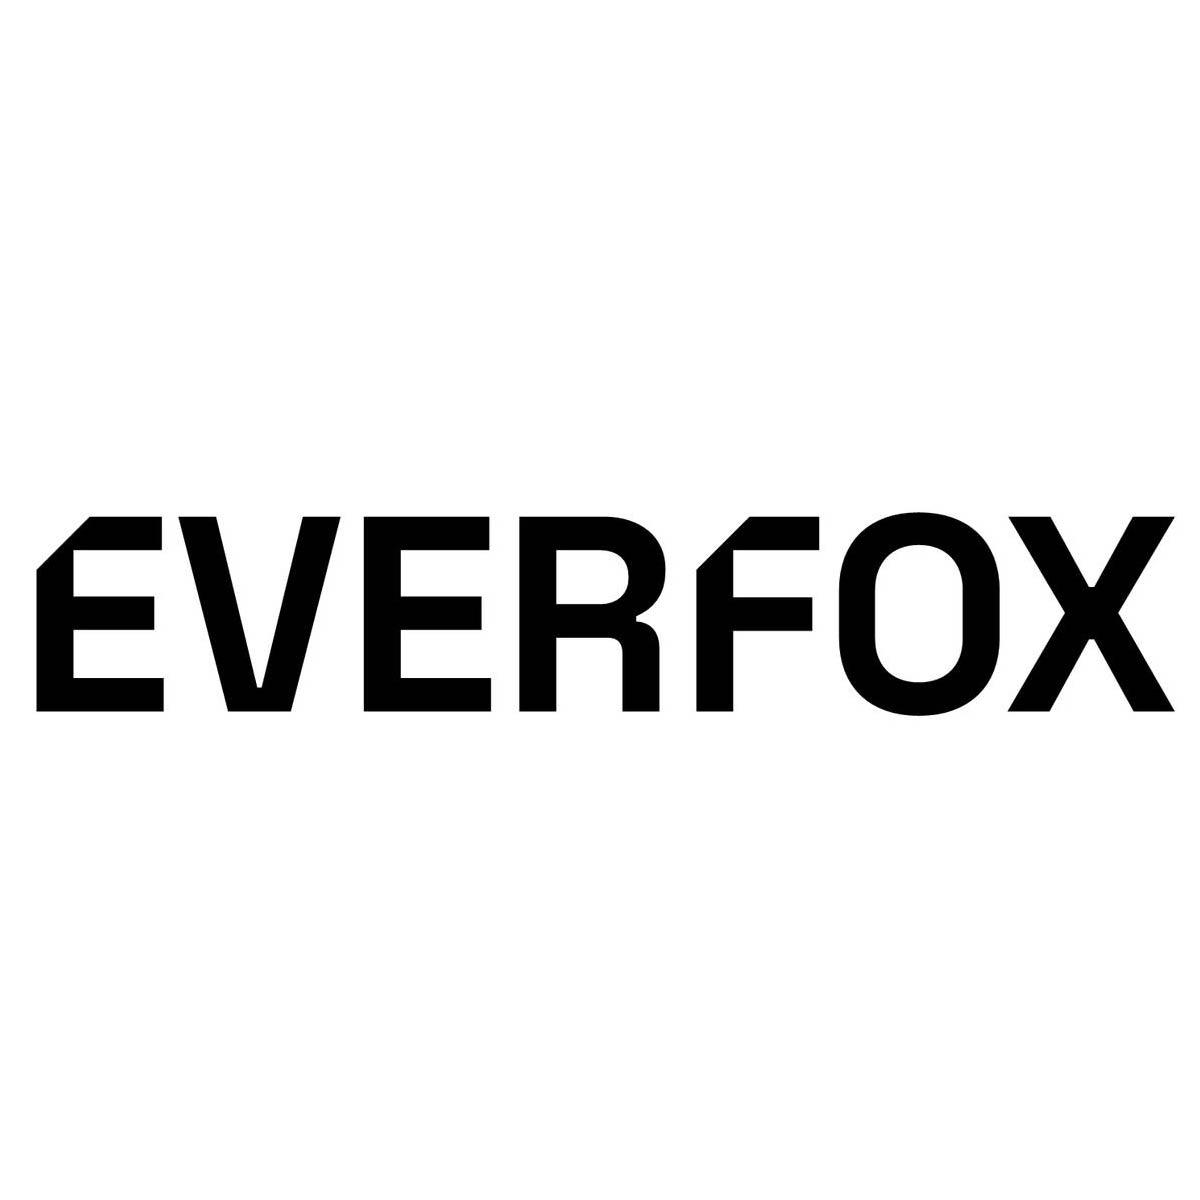 Linux Software Development Engineer - Everfox 1 Linux Software Development Engineer - Everfox